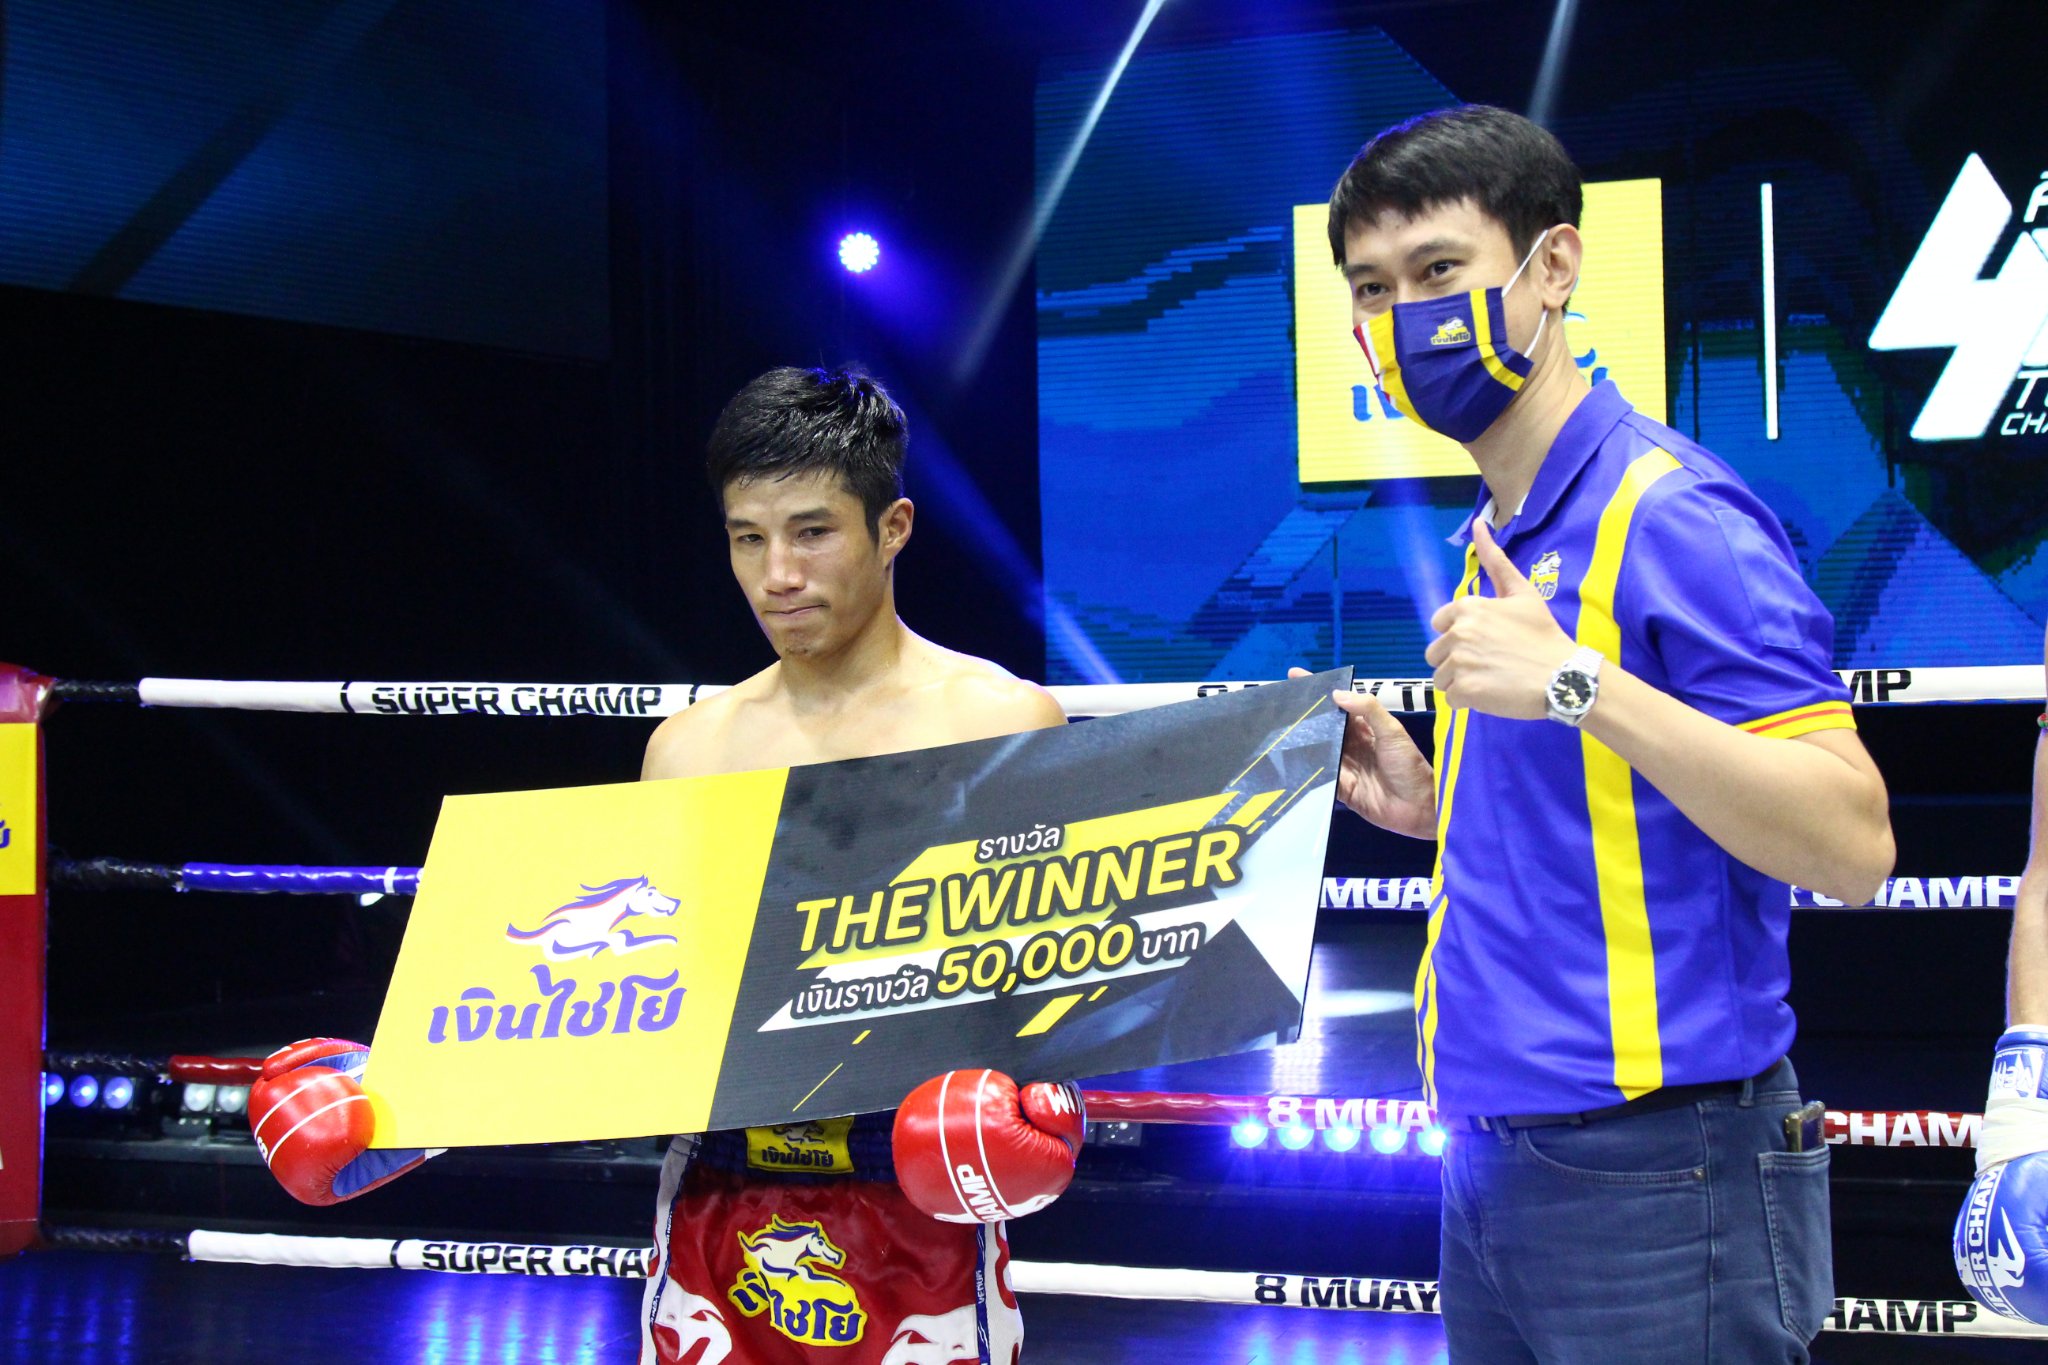 Trương Cao Minh Phát đấu 2 trận Muay trong 1 đêm ở Thái Lan, thắng KO cả 2 - Ảnh 6